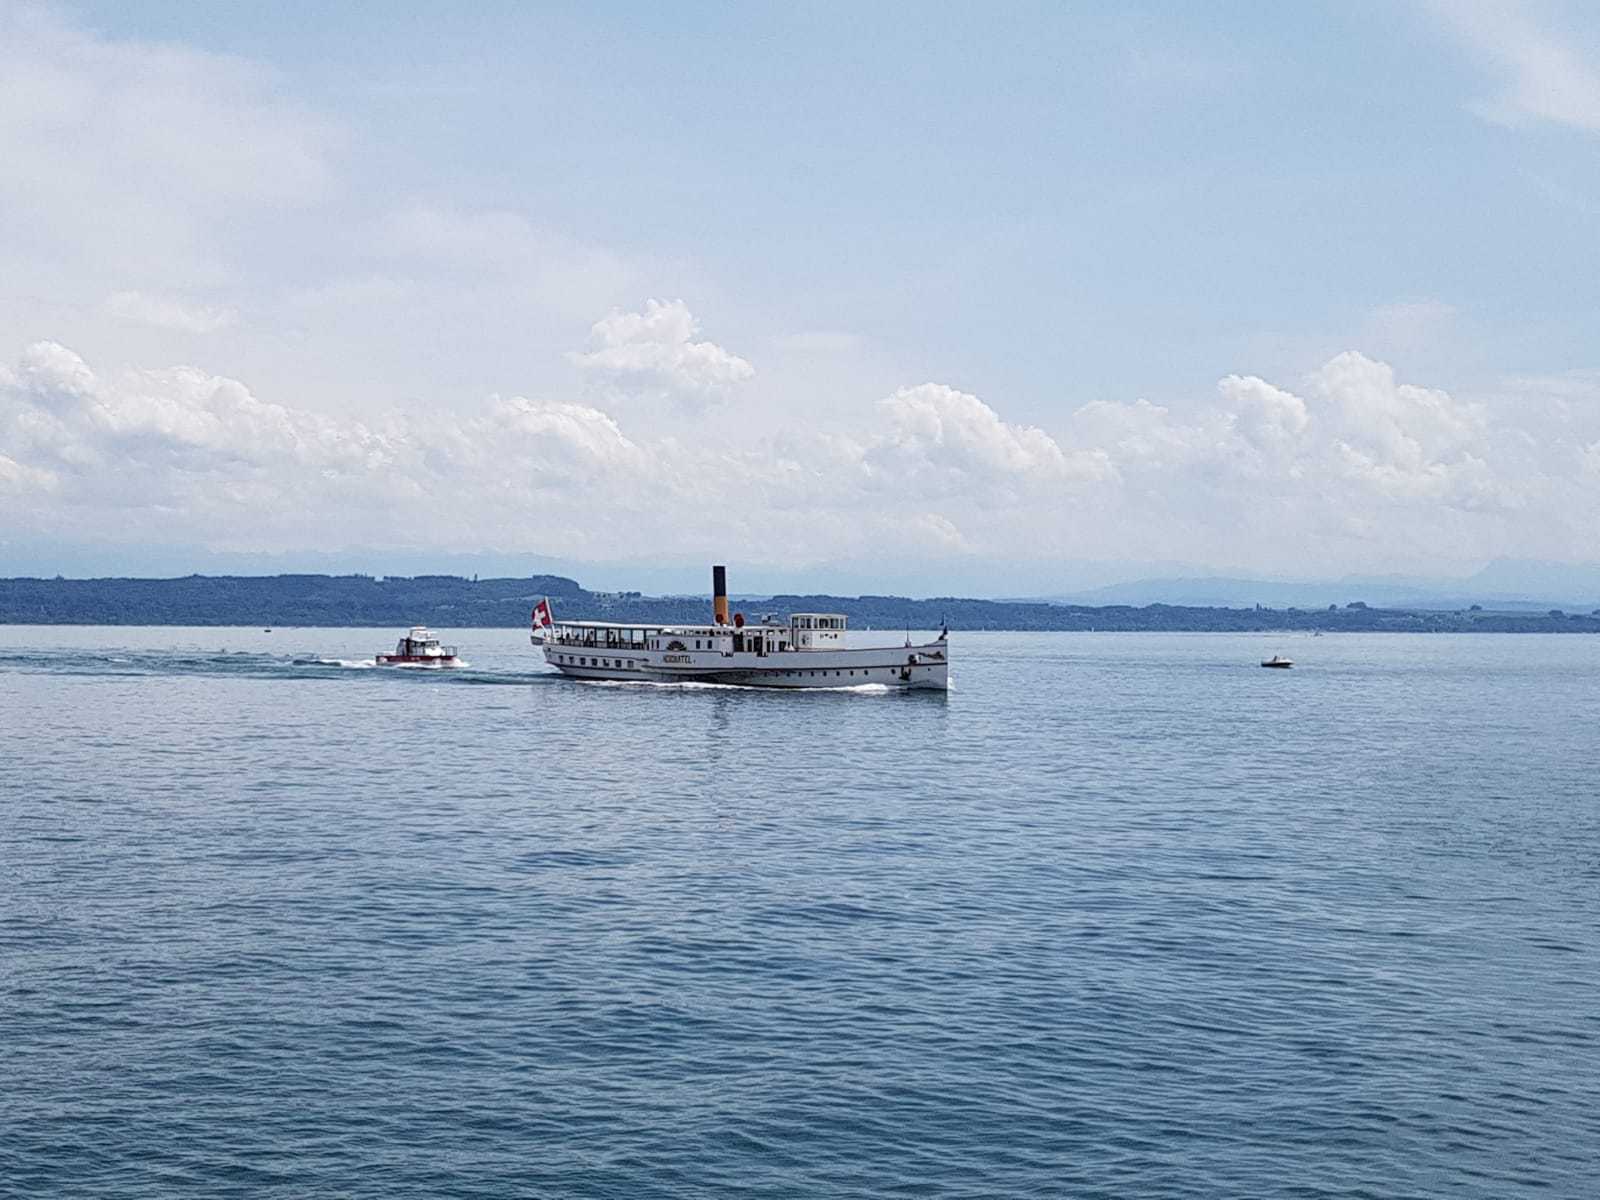 Par mesure de précaution, le bateau à vapeur a été escorté par les pompiers jusqu'au port de Neuchâtel.